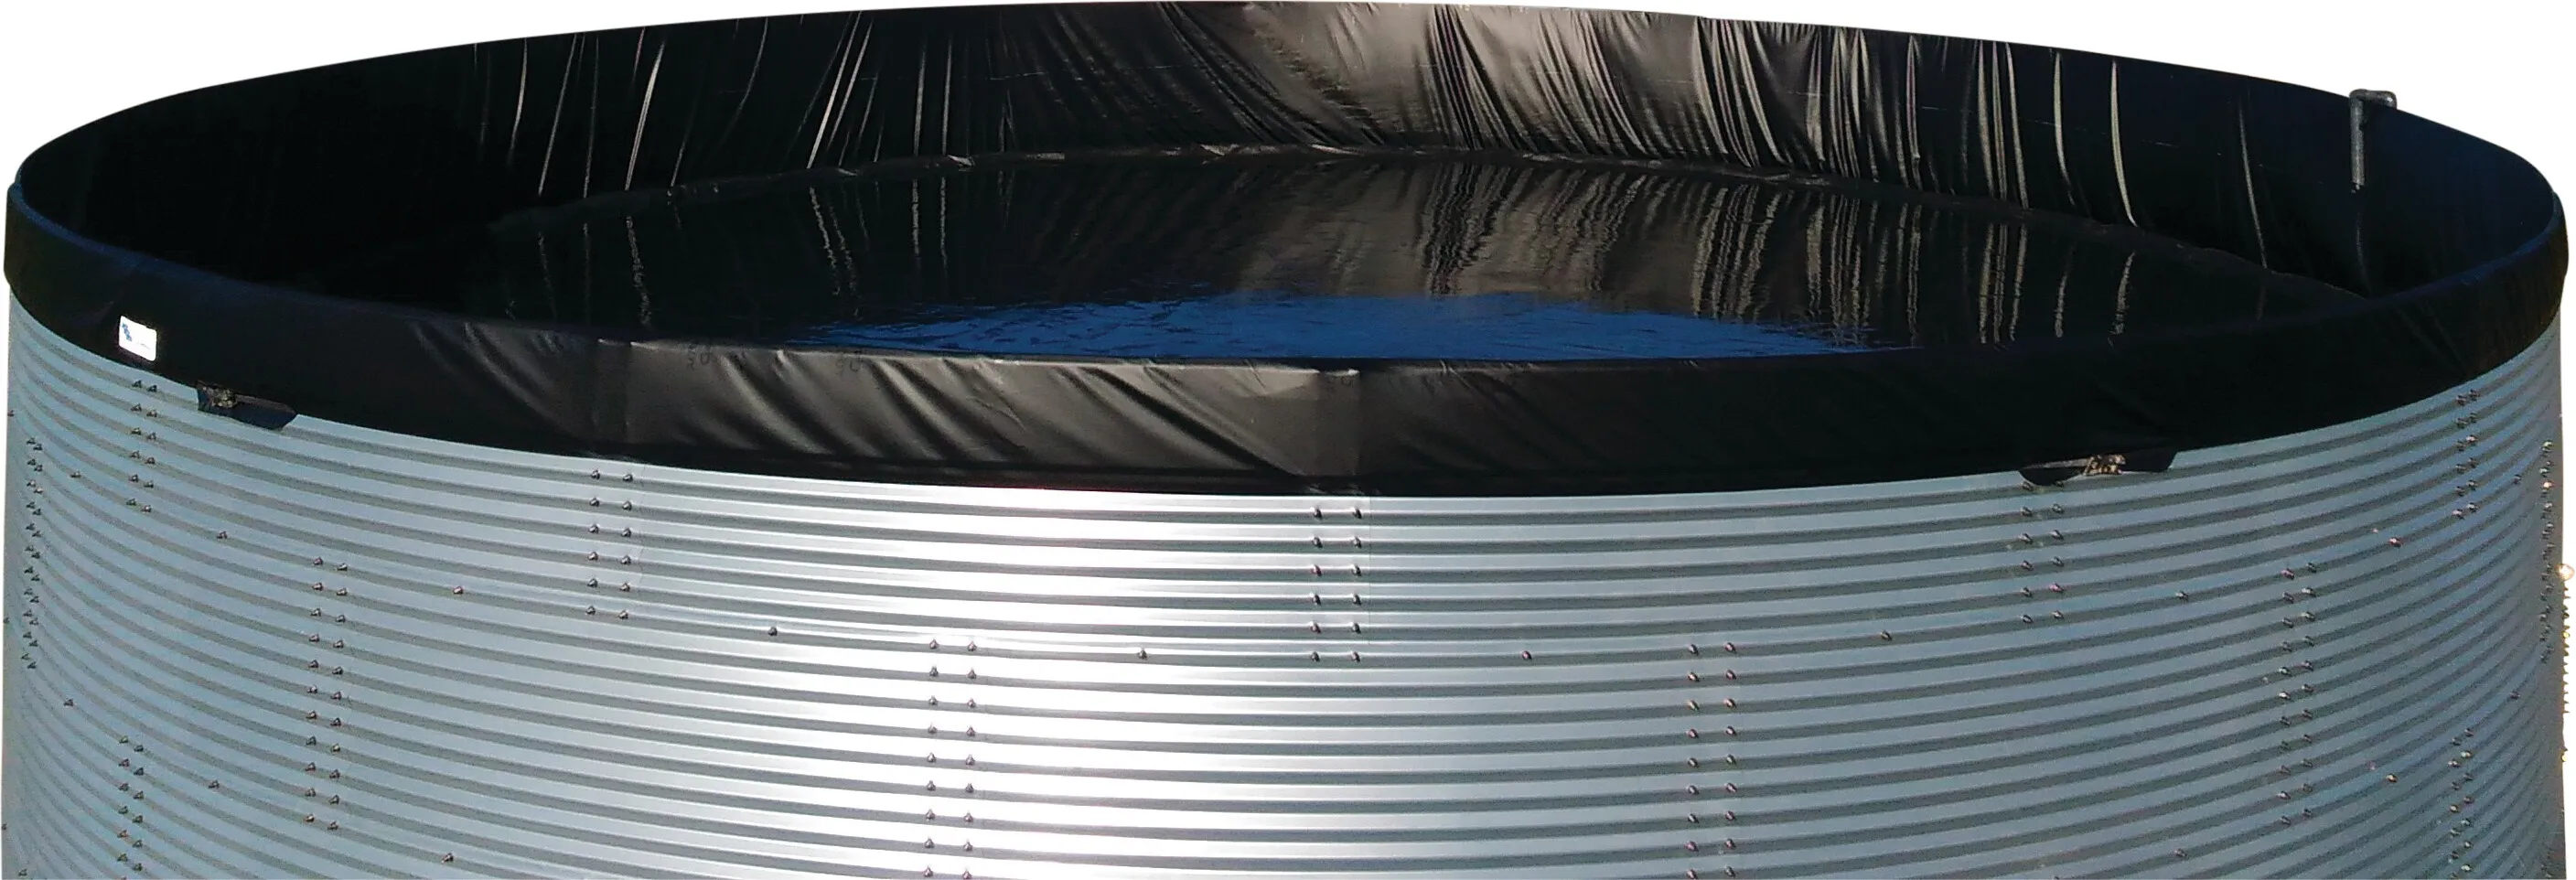 Vandtank stål galvaniseret 5000L type WSW 2.01 x 1.59m